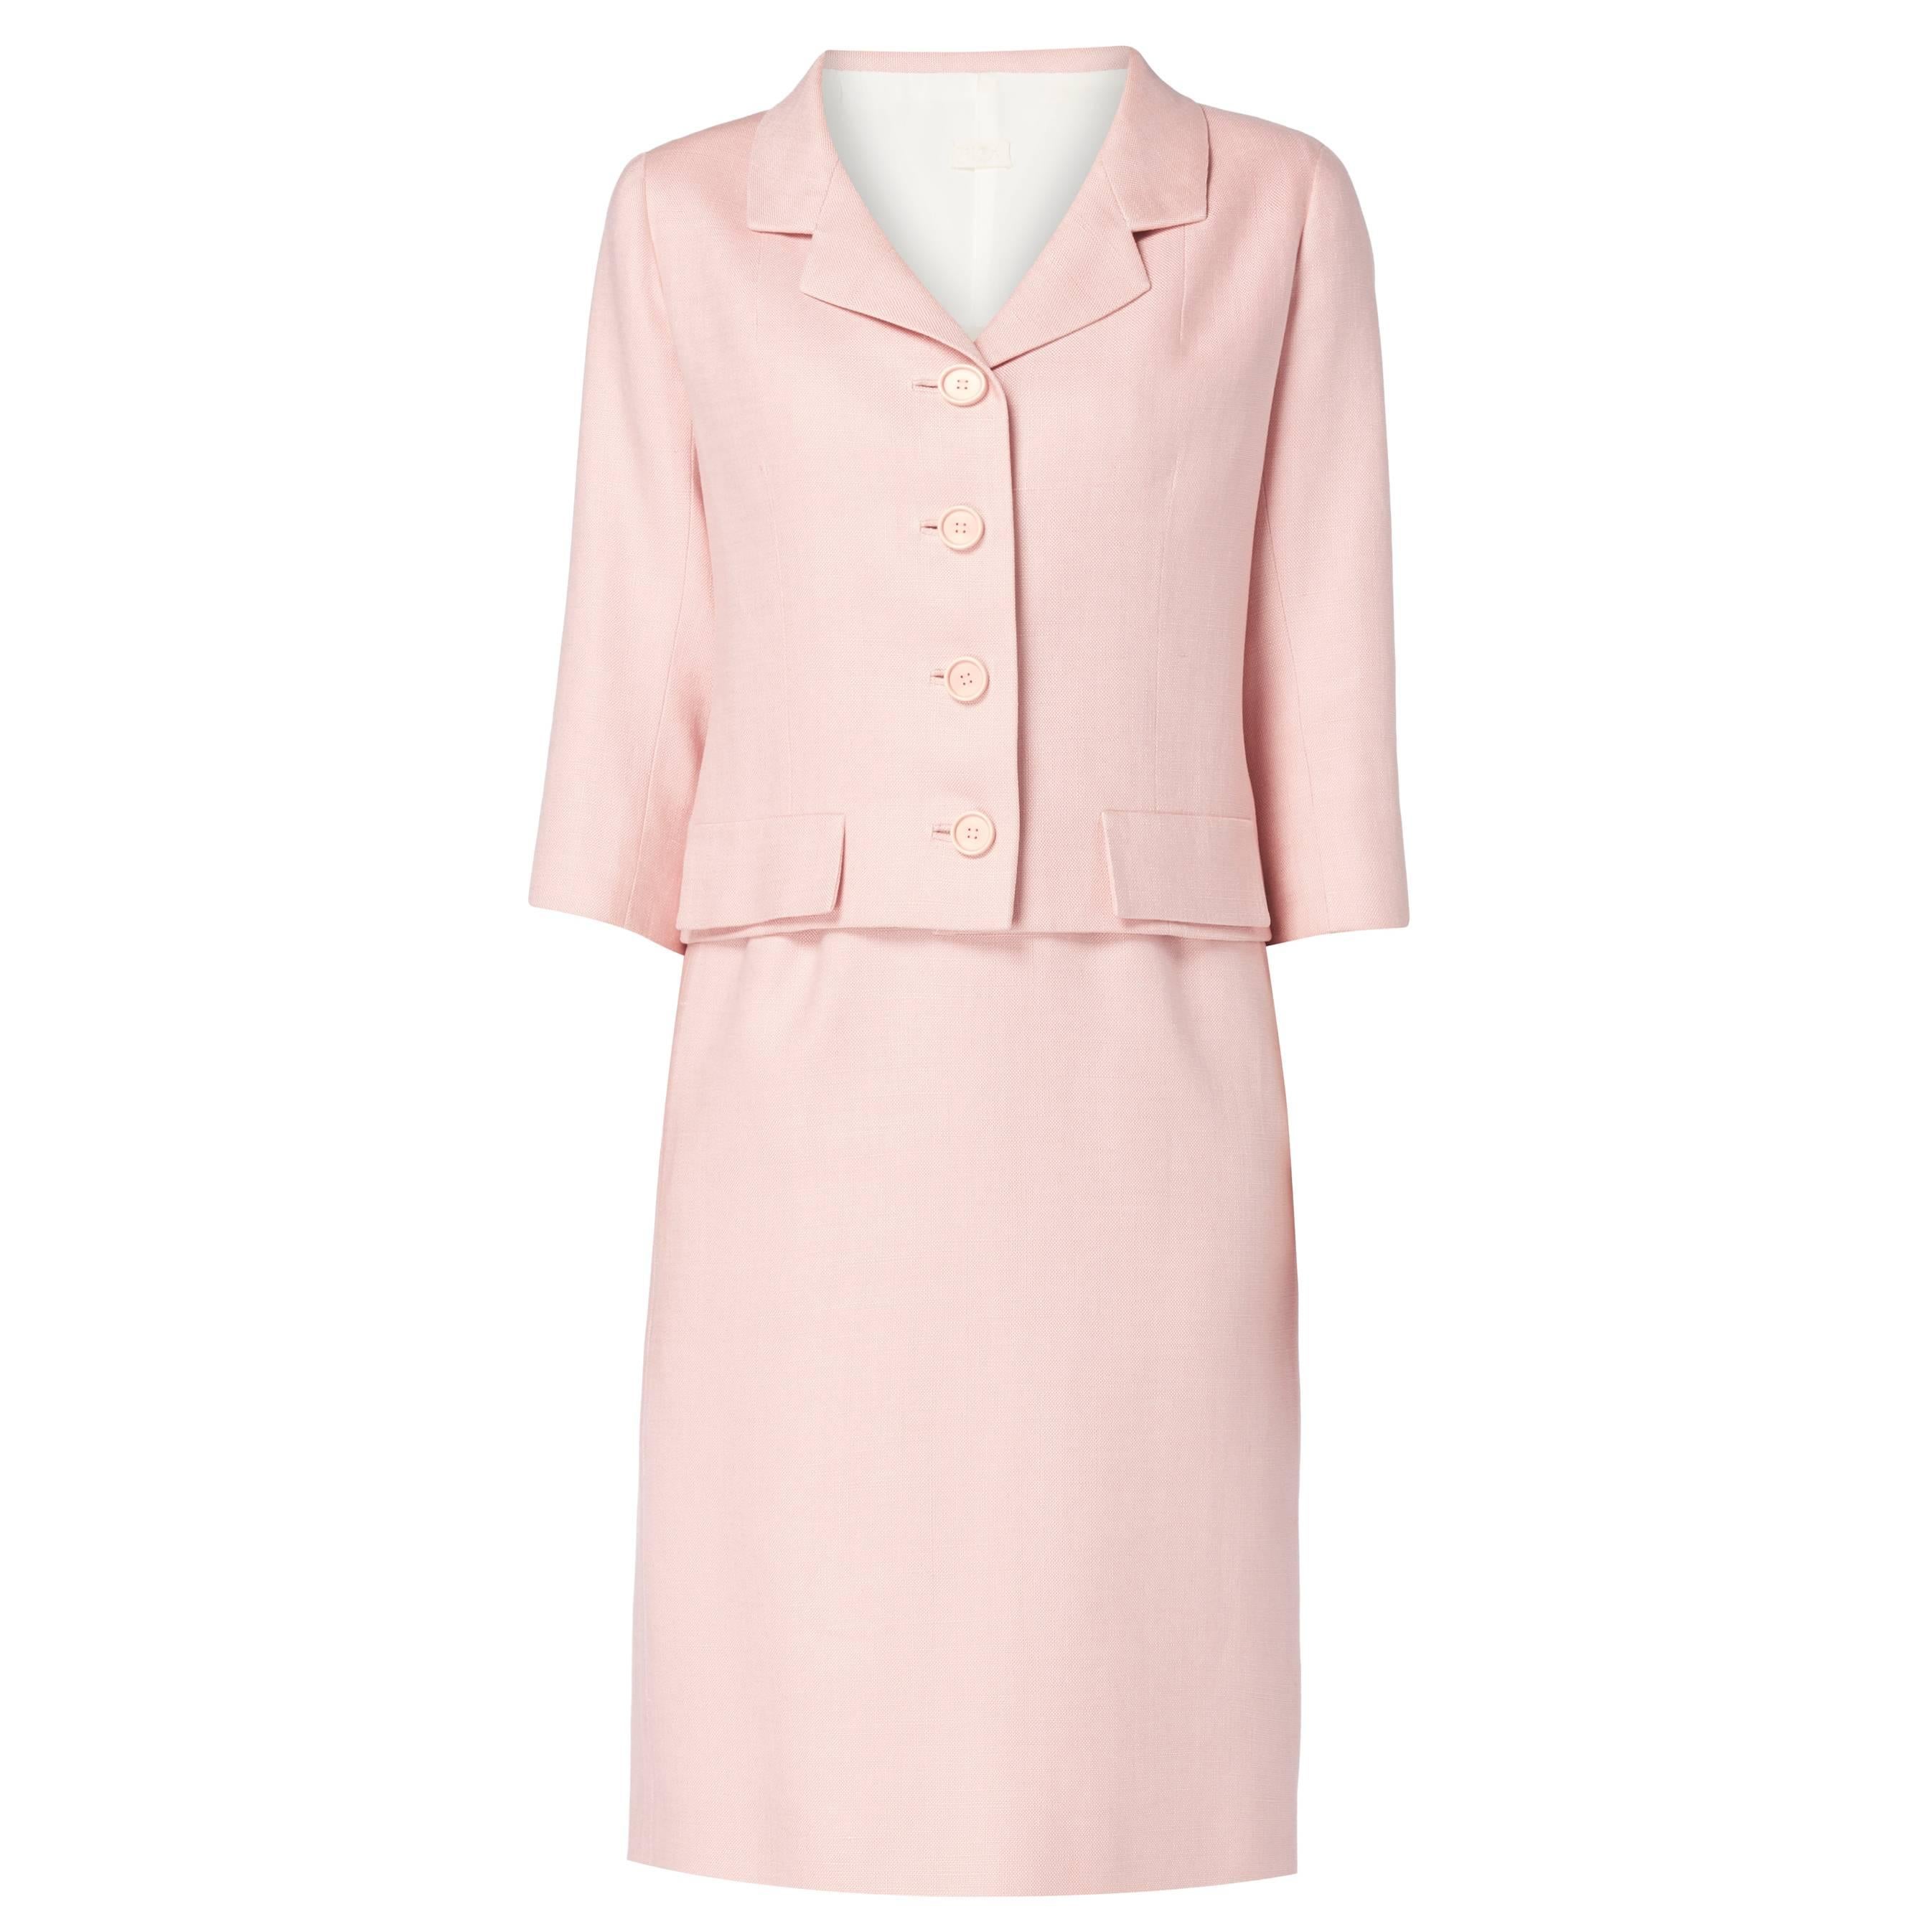 Balenciaga haute couture pink skirt suit, circa 1965